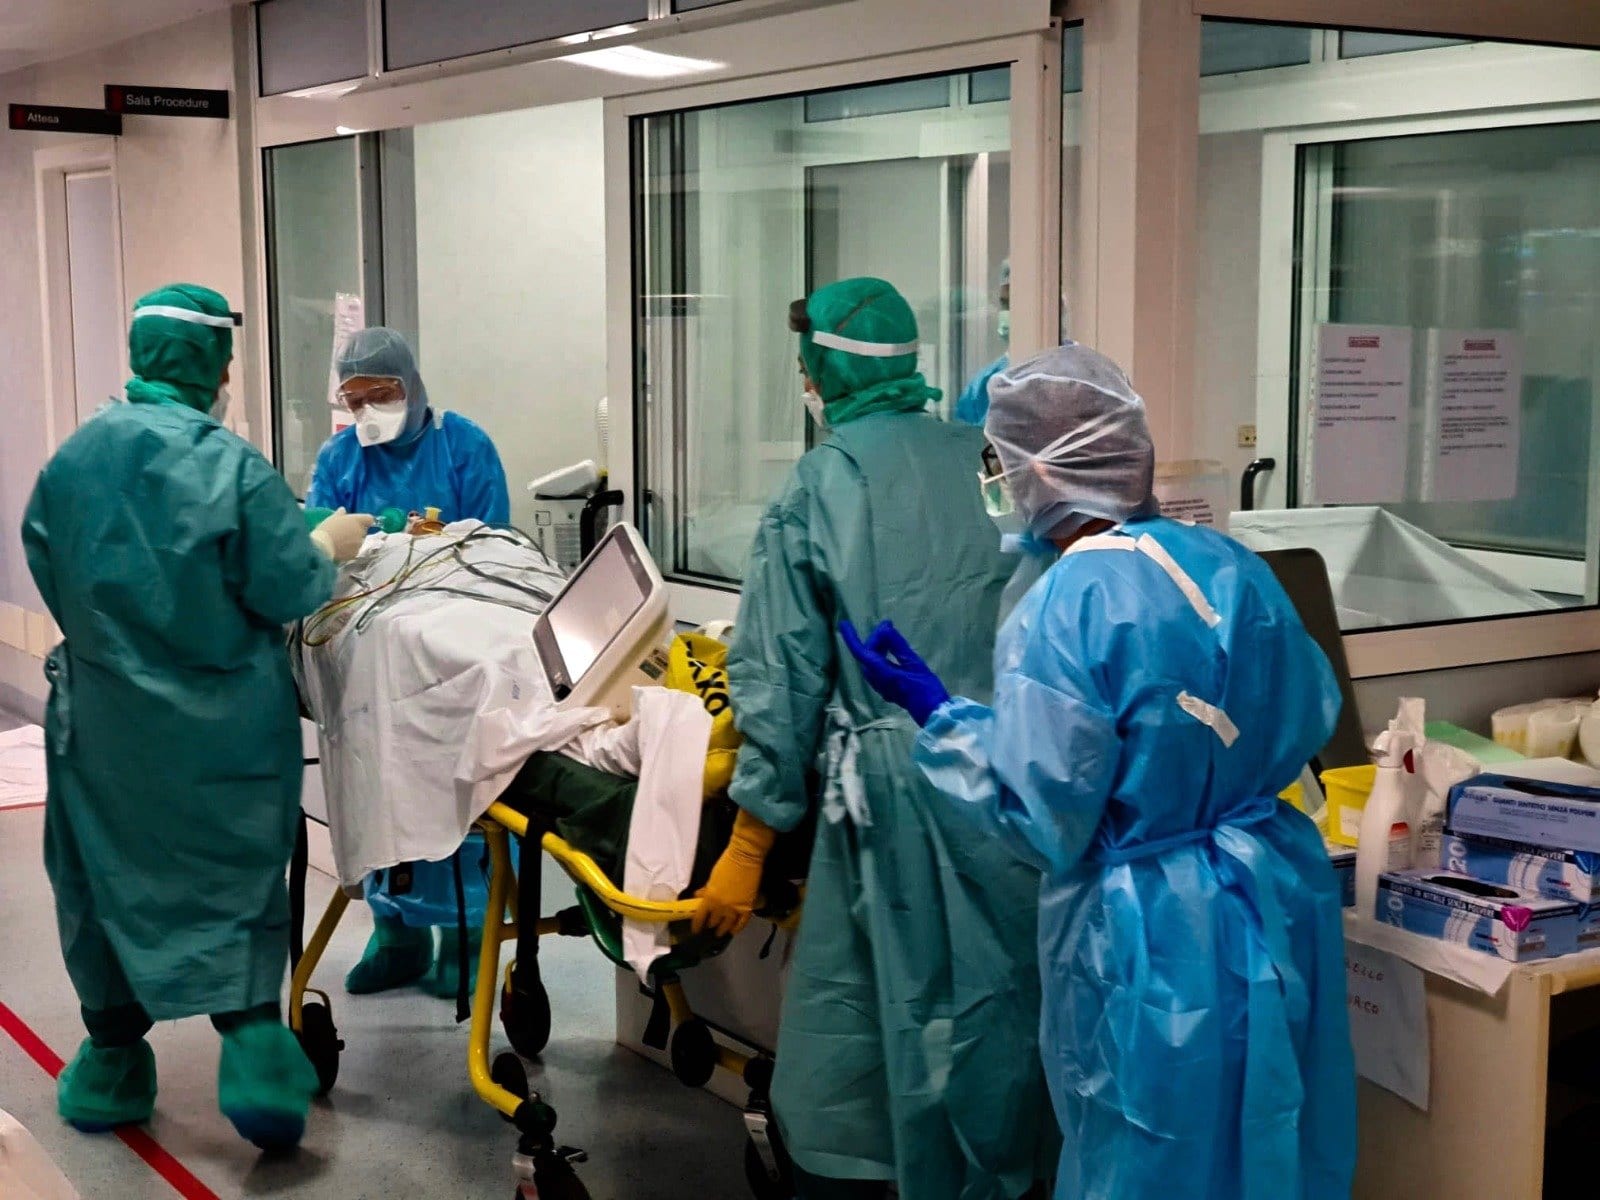 Ospedale di Saronno, trasferiti i pazienti della terapia intensiva Covid. C’è carenza di personale